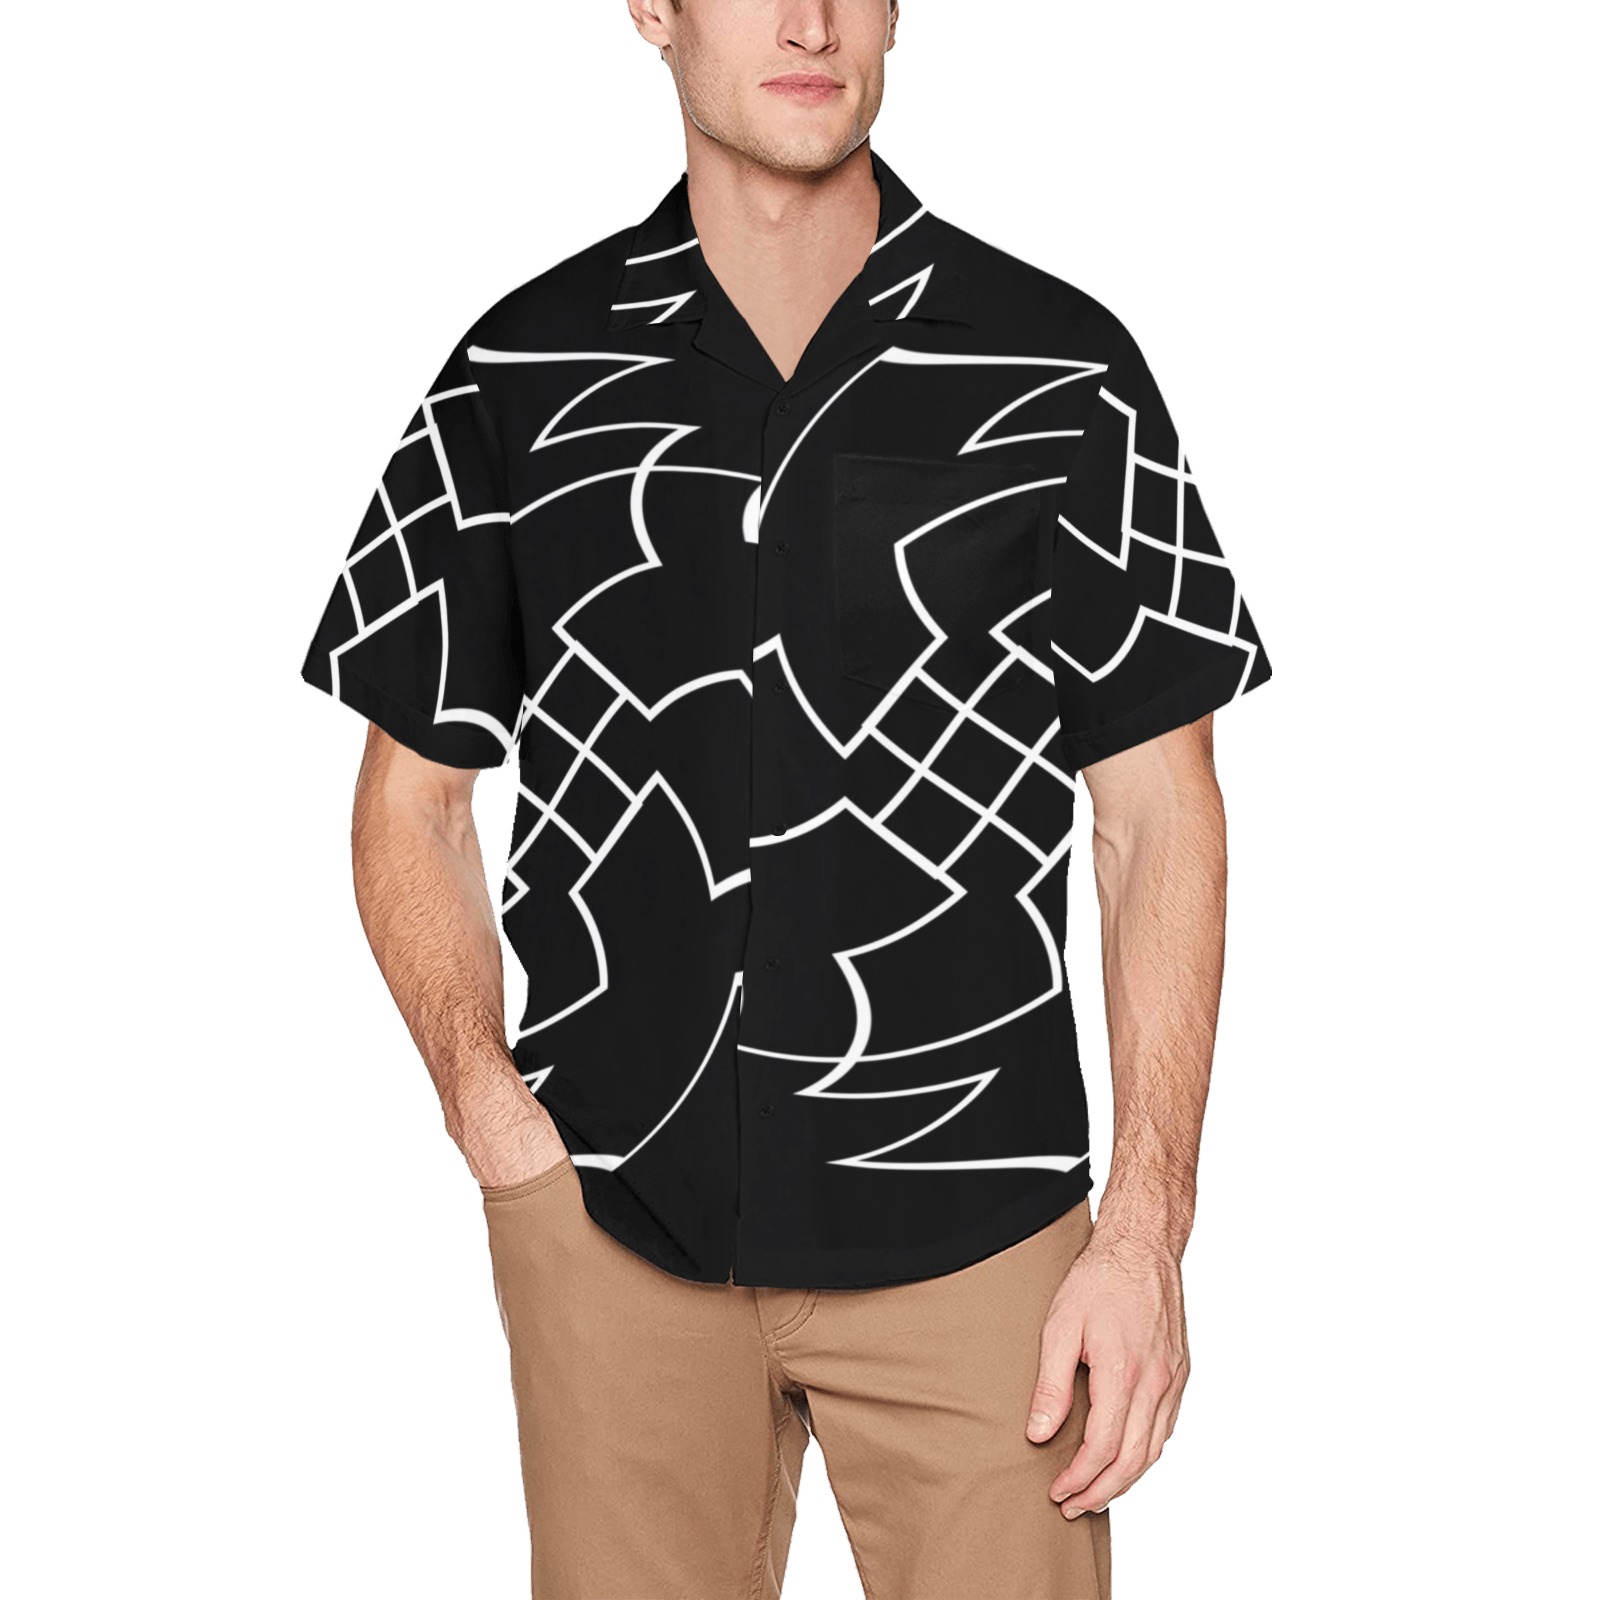 White Interlocking Crosses Twirled black Hawaiian Shirt with Chest ...